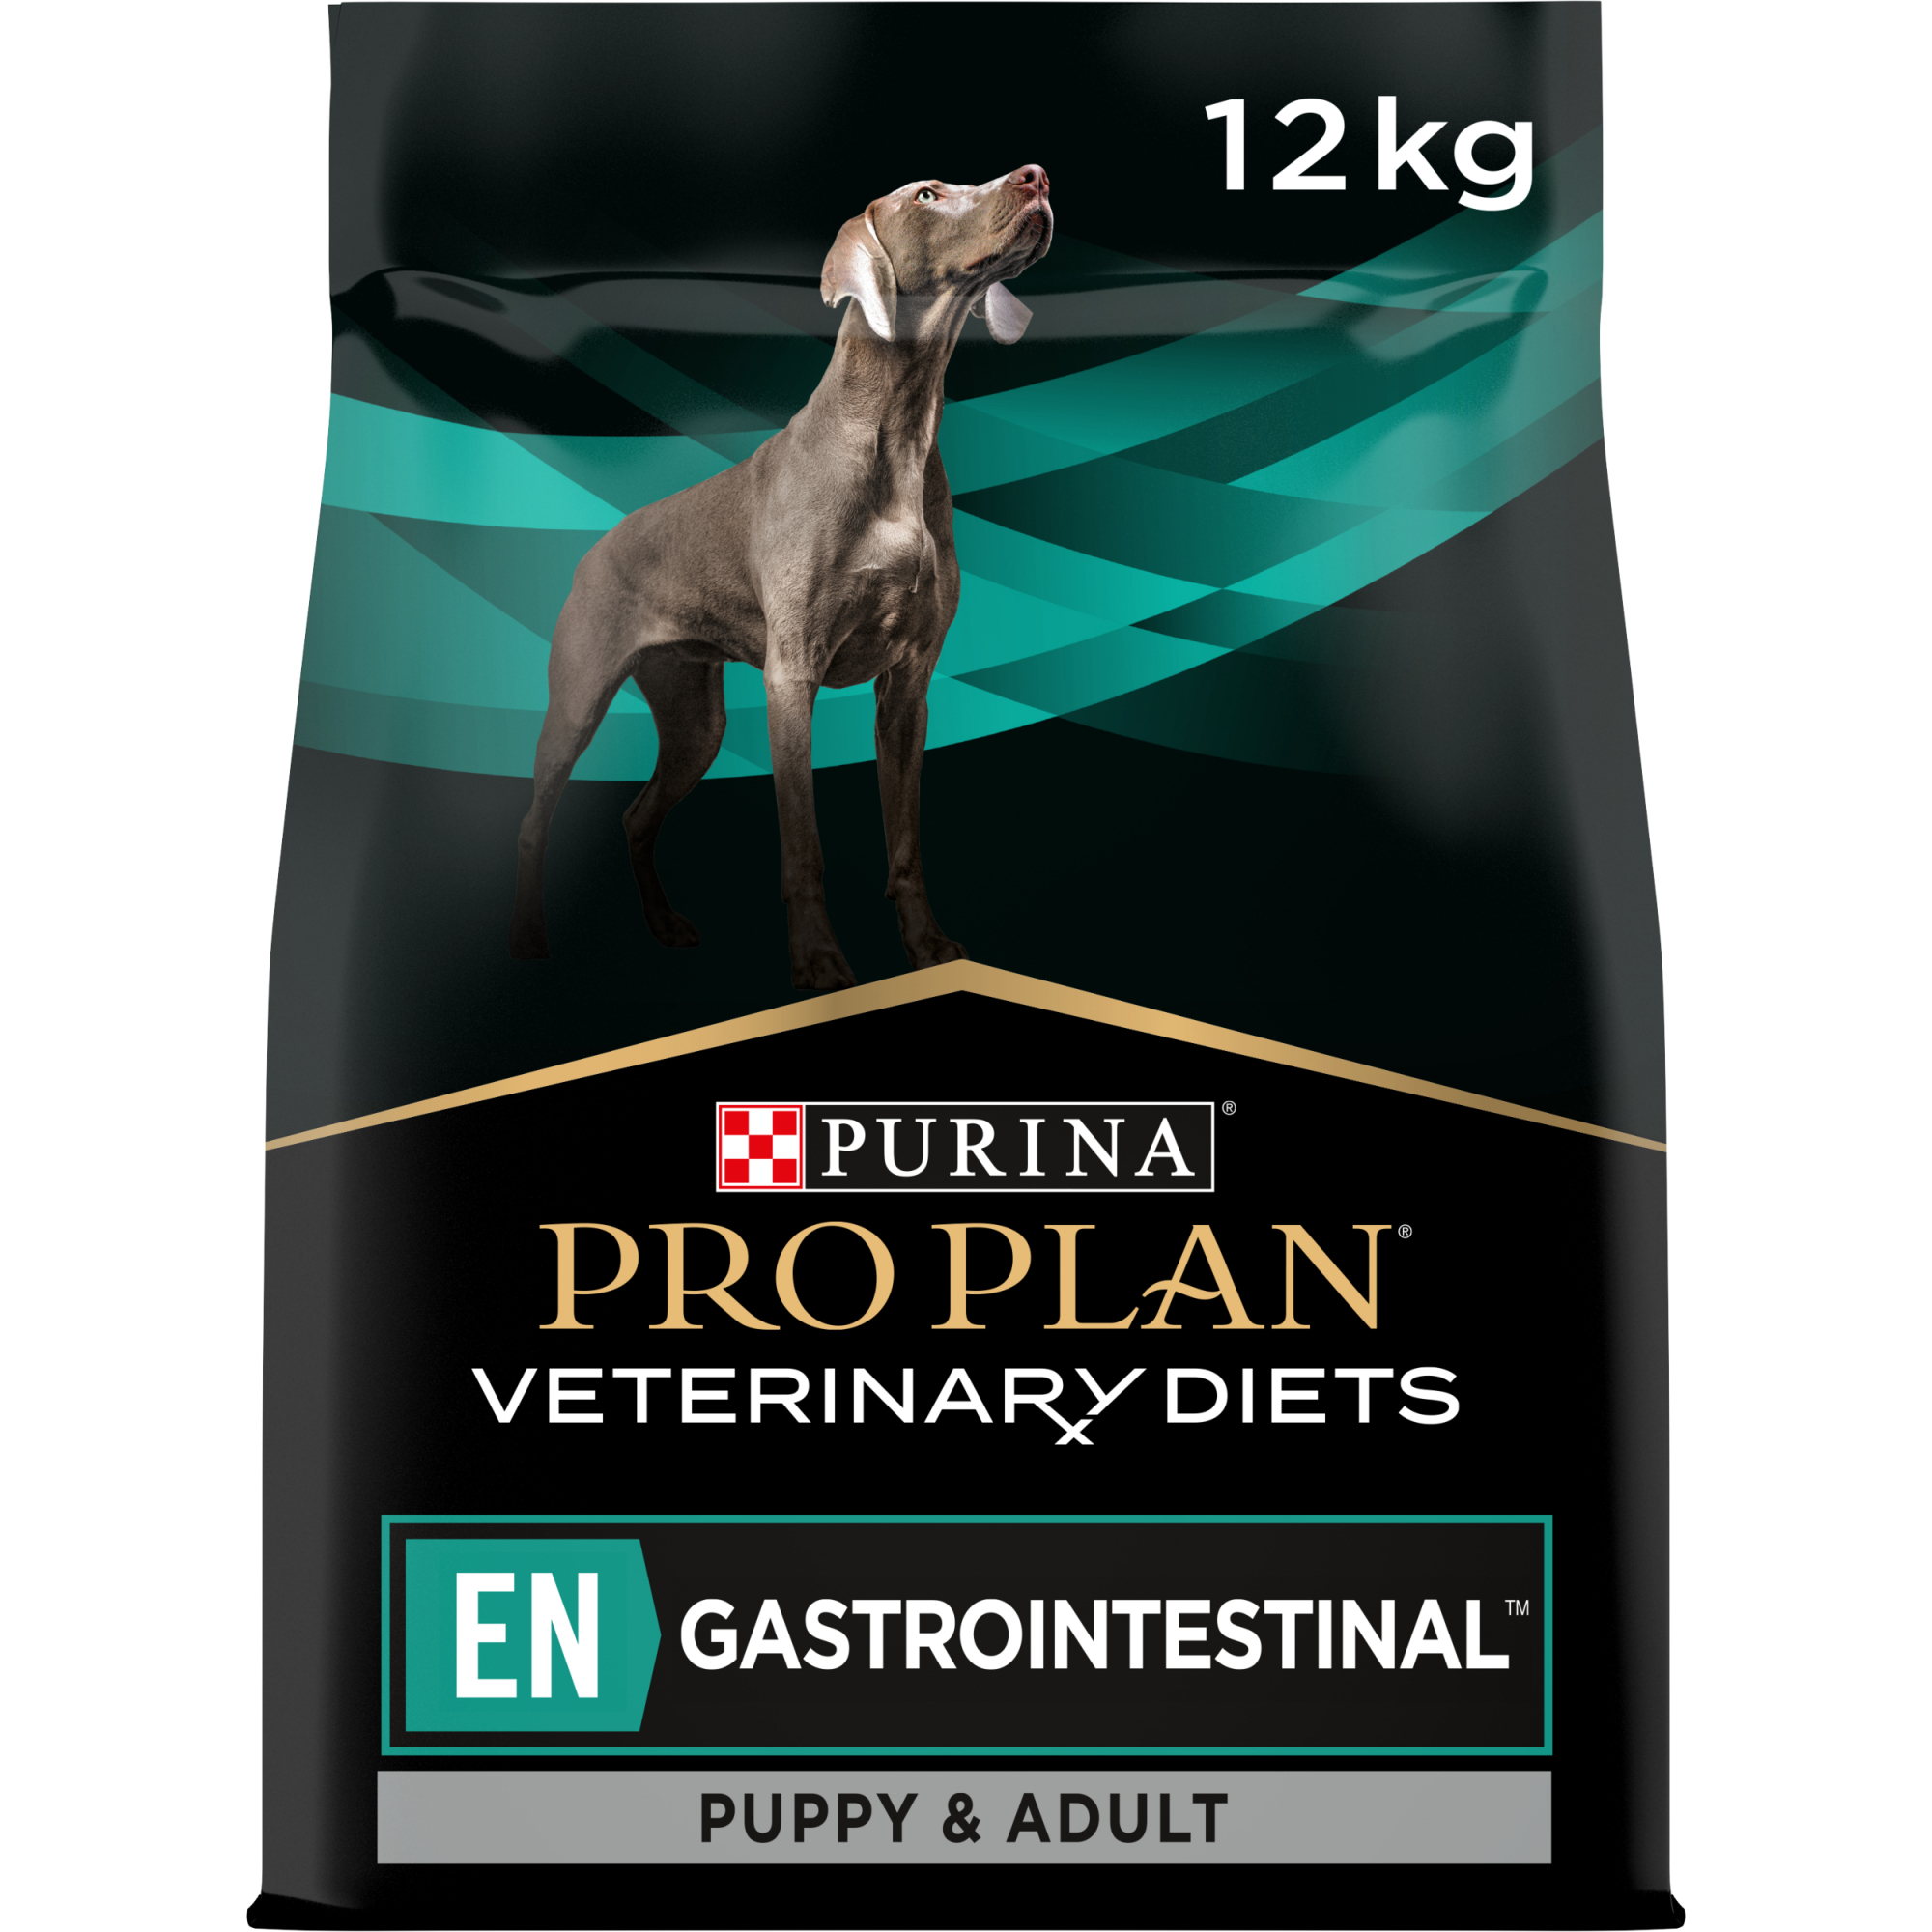 Purina Pro Plan Veterinary Diets EN Gastrointestinal Alimentação veterinária para cão com problemas gastrointestinais